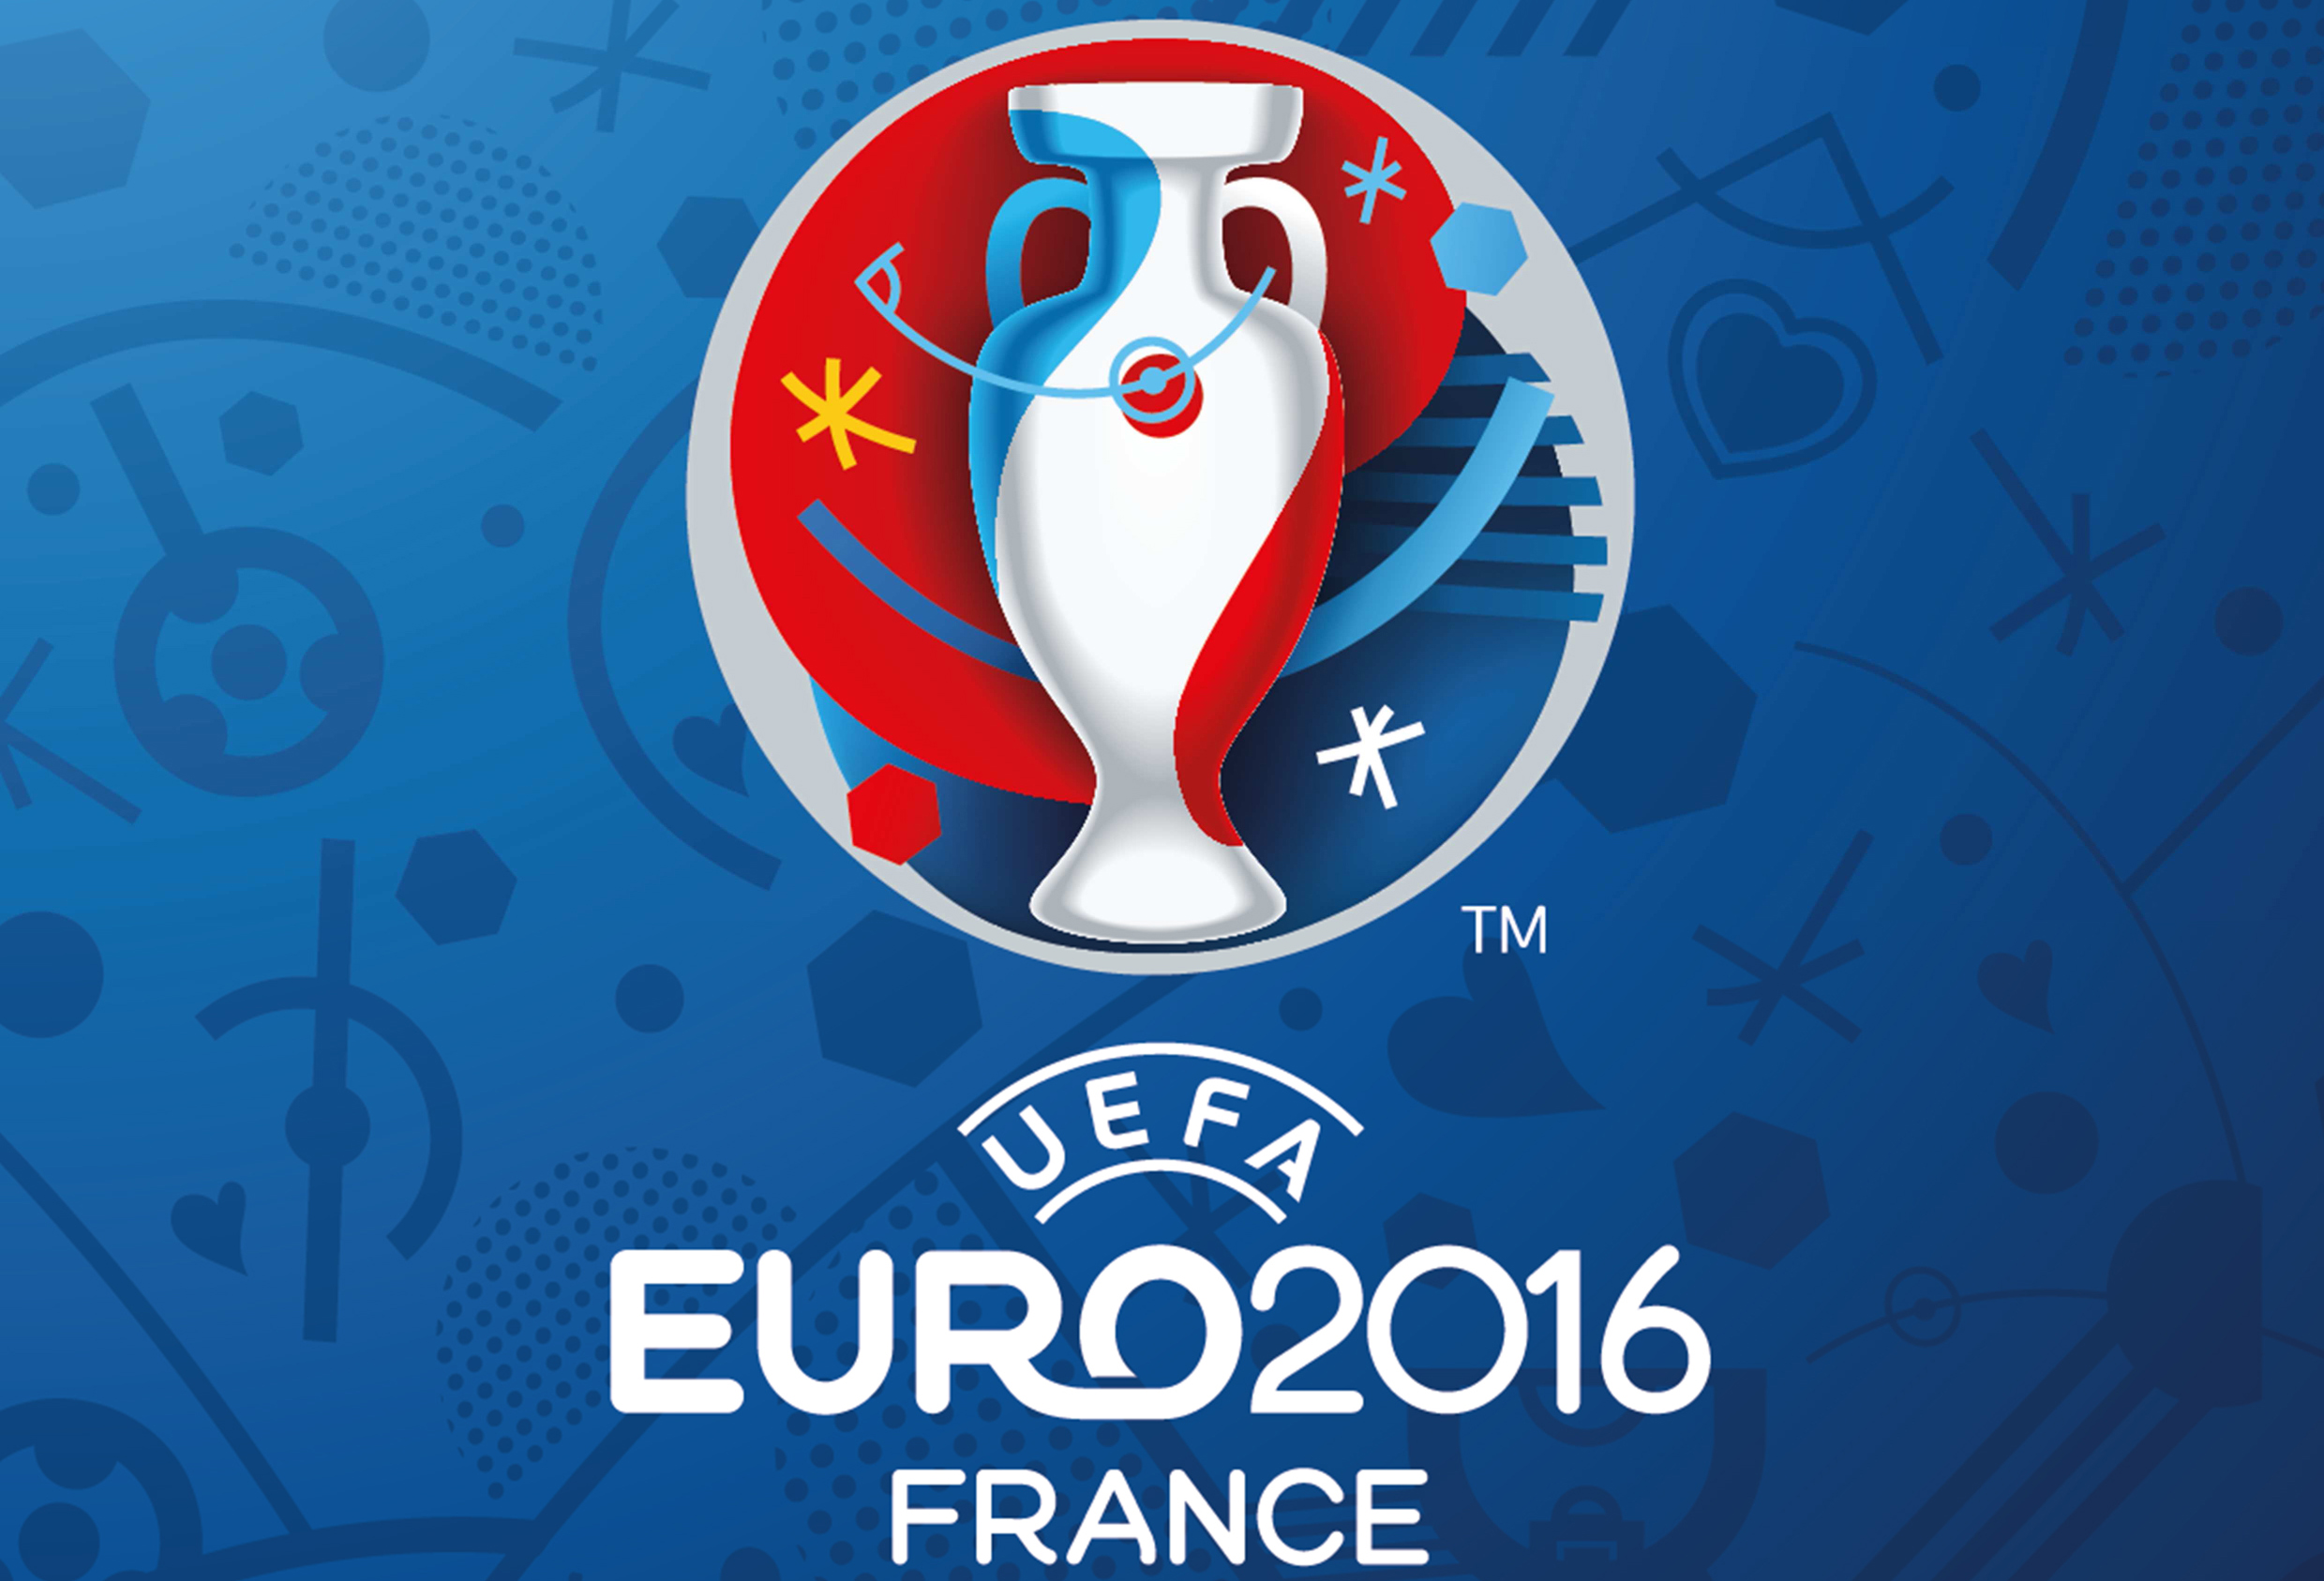 Chamadas dos jogos da UEFA Euro 2016